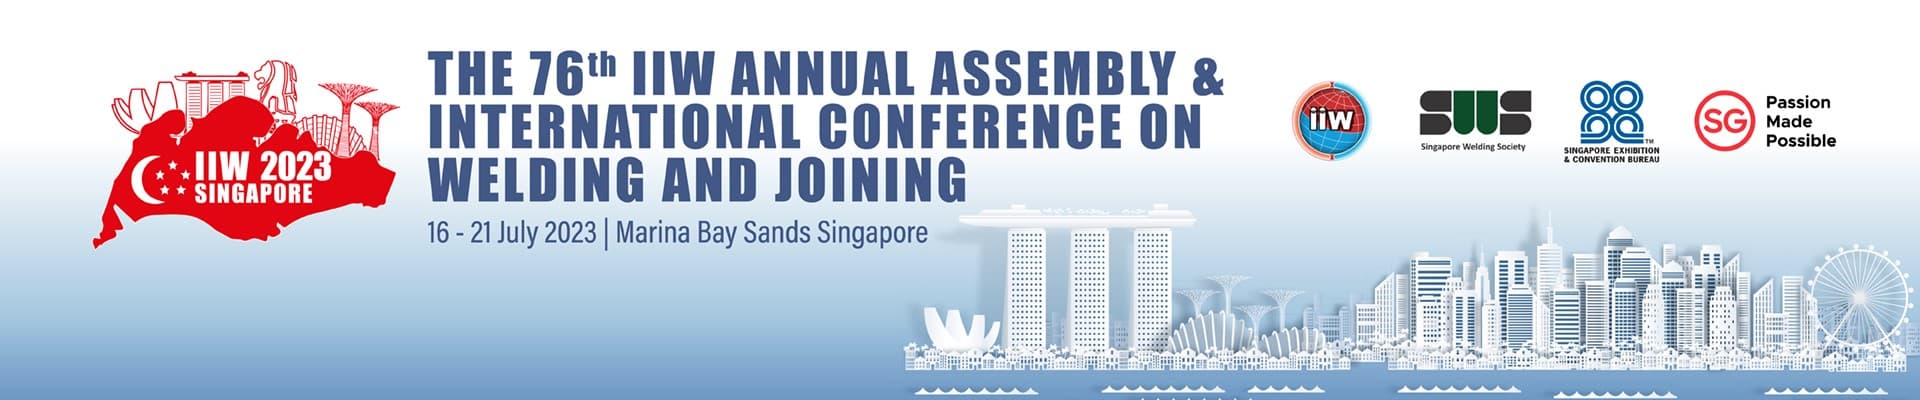 IIW 76. Yıllık Genel Kurul toplantısı 16-21 Temmuz 2023 tarihleri arasında Singapur’da gerçekleşecektir.